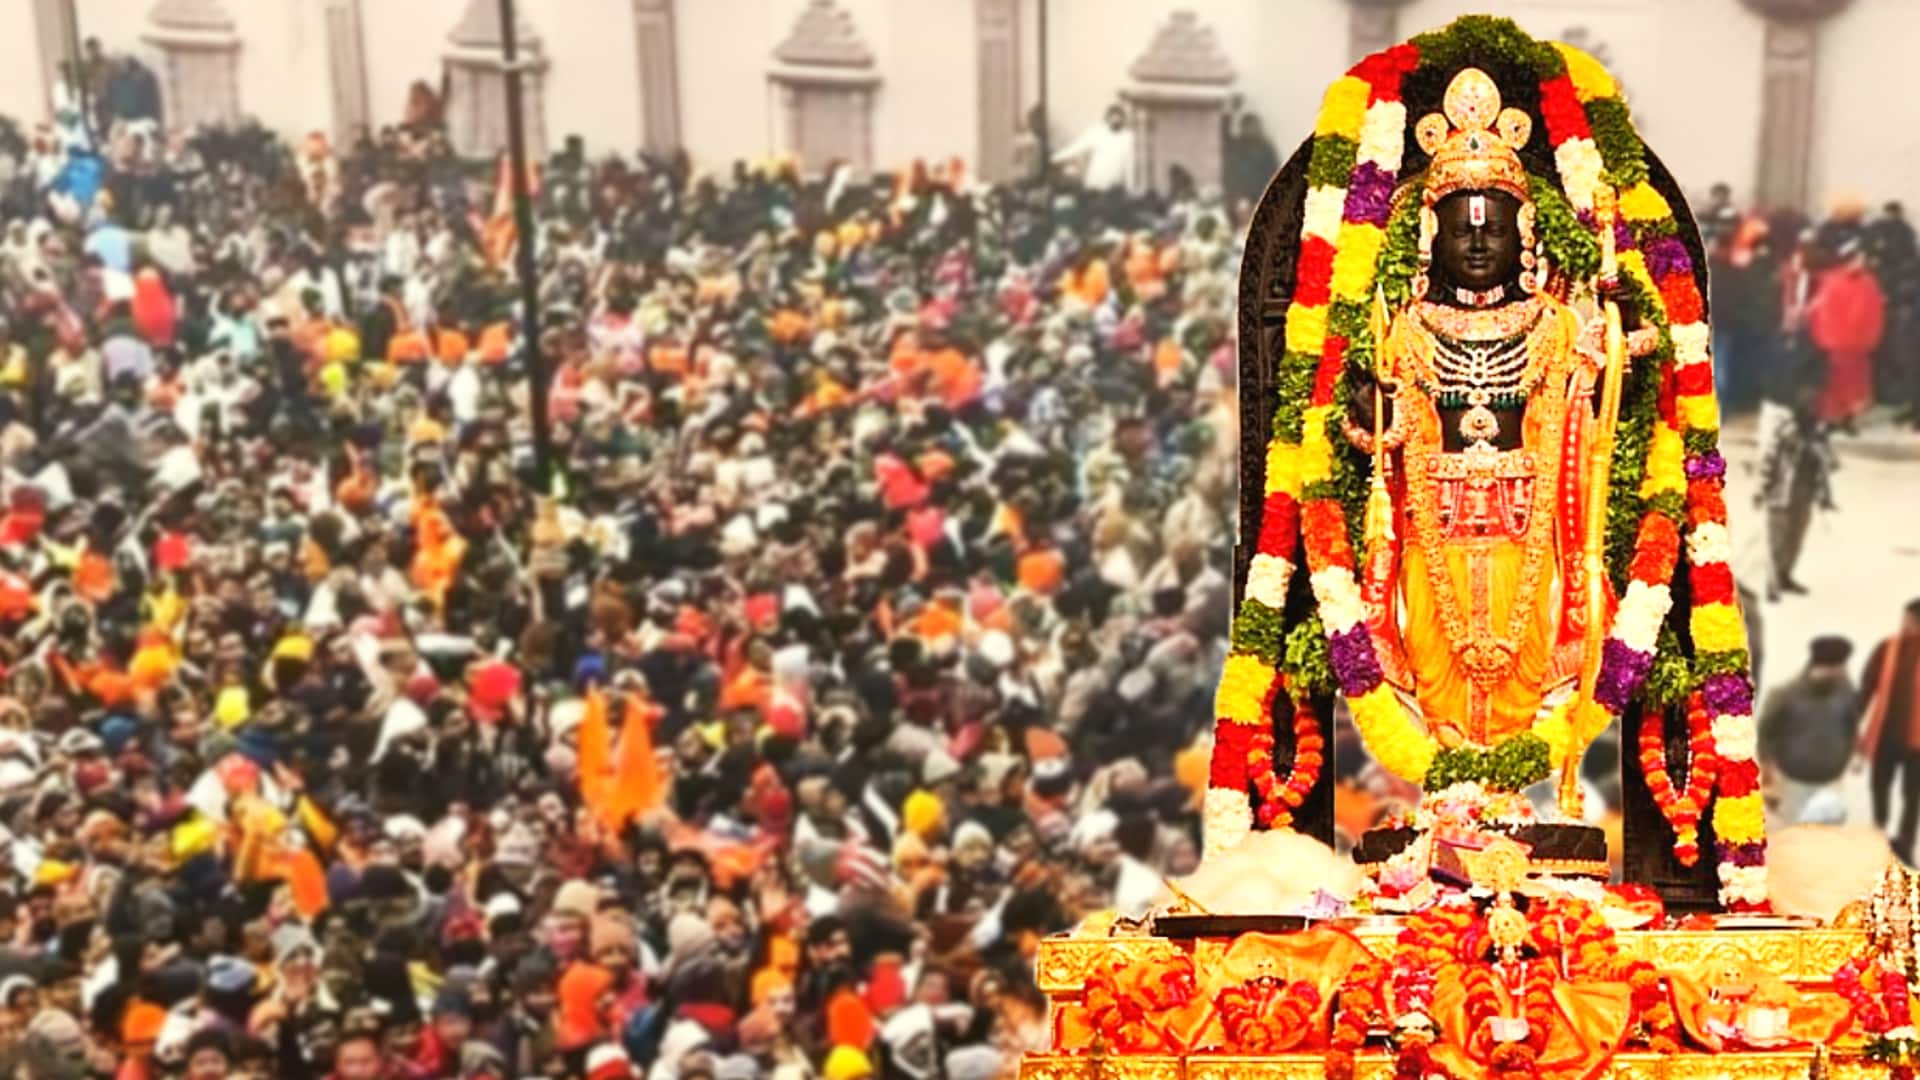 राम मंदिर में फिलहाल प्रवेश बंद किया गया, भीड़ को नियंत्रित करना हो रहा मुश्किल